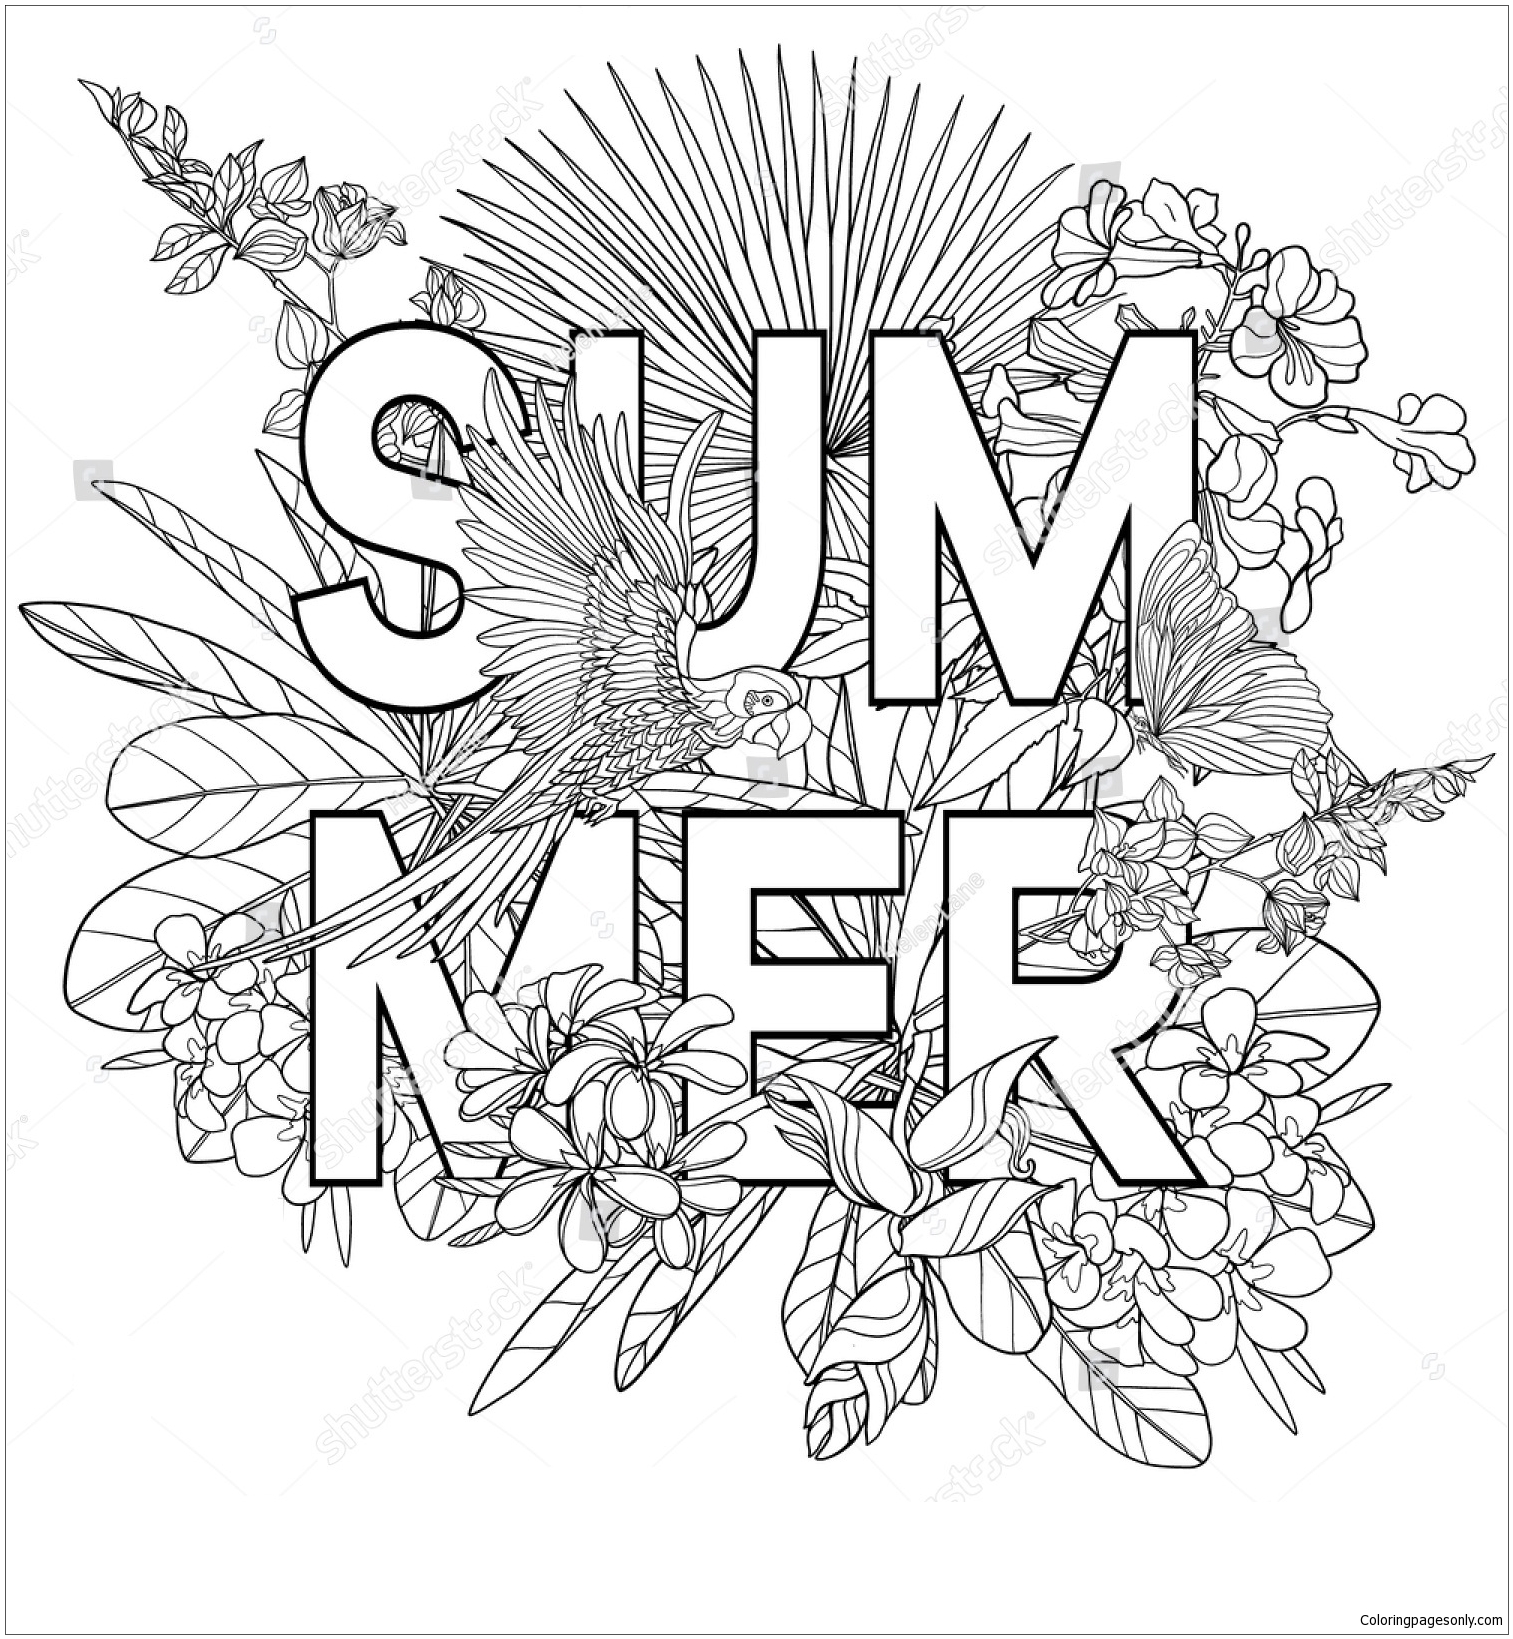 Das Wort Sommer vom Sommer